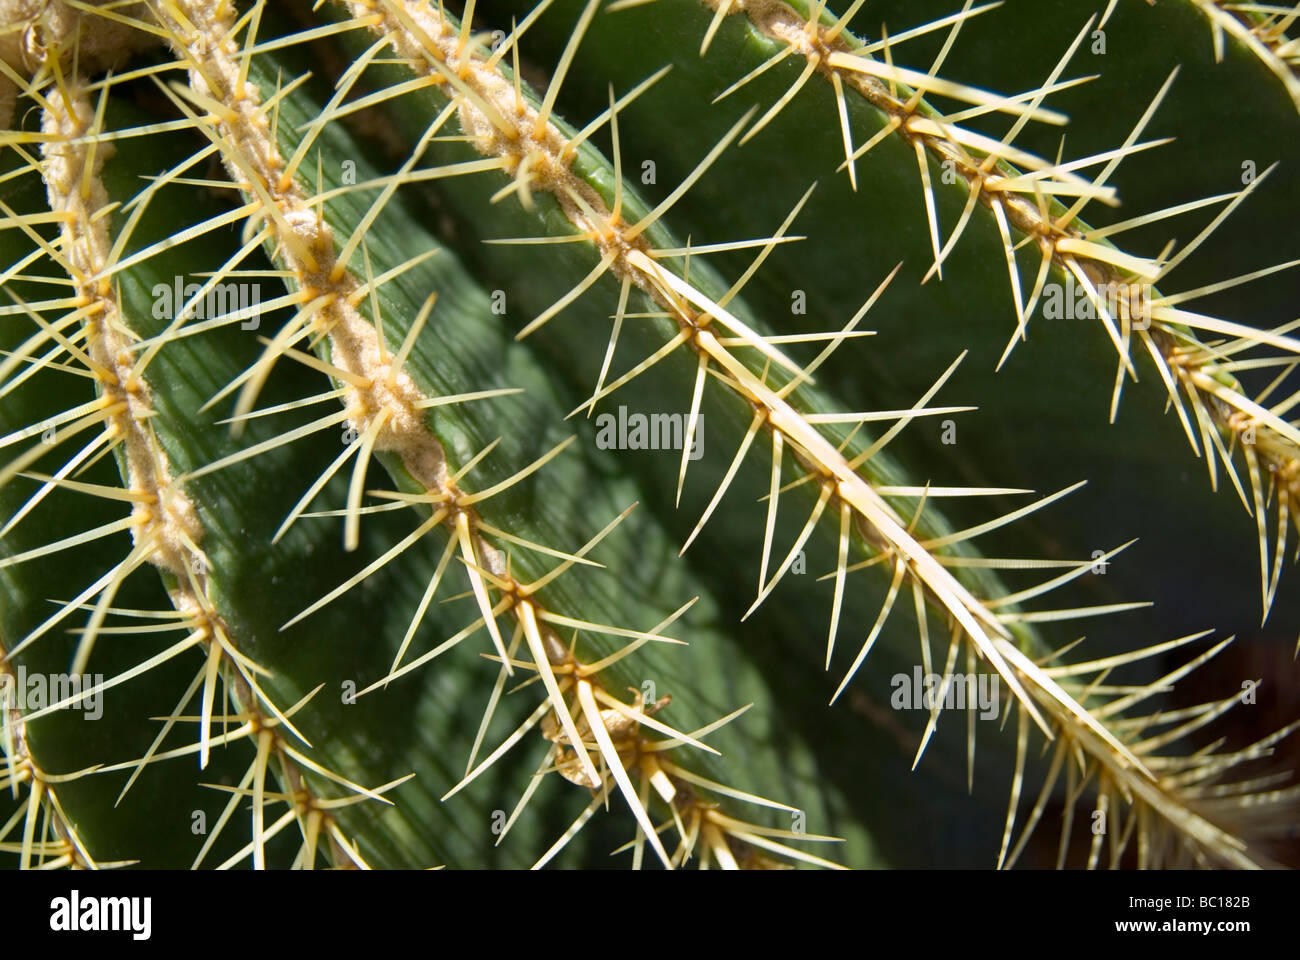 Lignes d'aiguilles sharp line la peau d'un cactus dans le jardins Marjorelle à Marrakech Maroc Afrique du Nord Banque D'Images